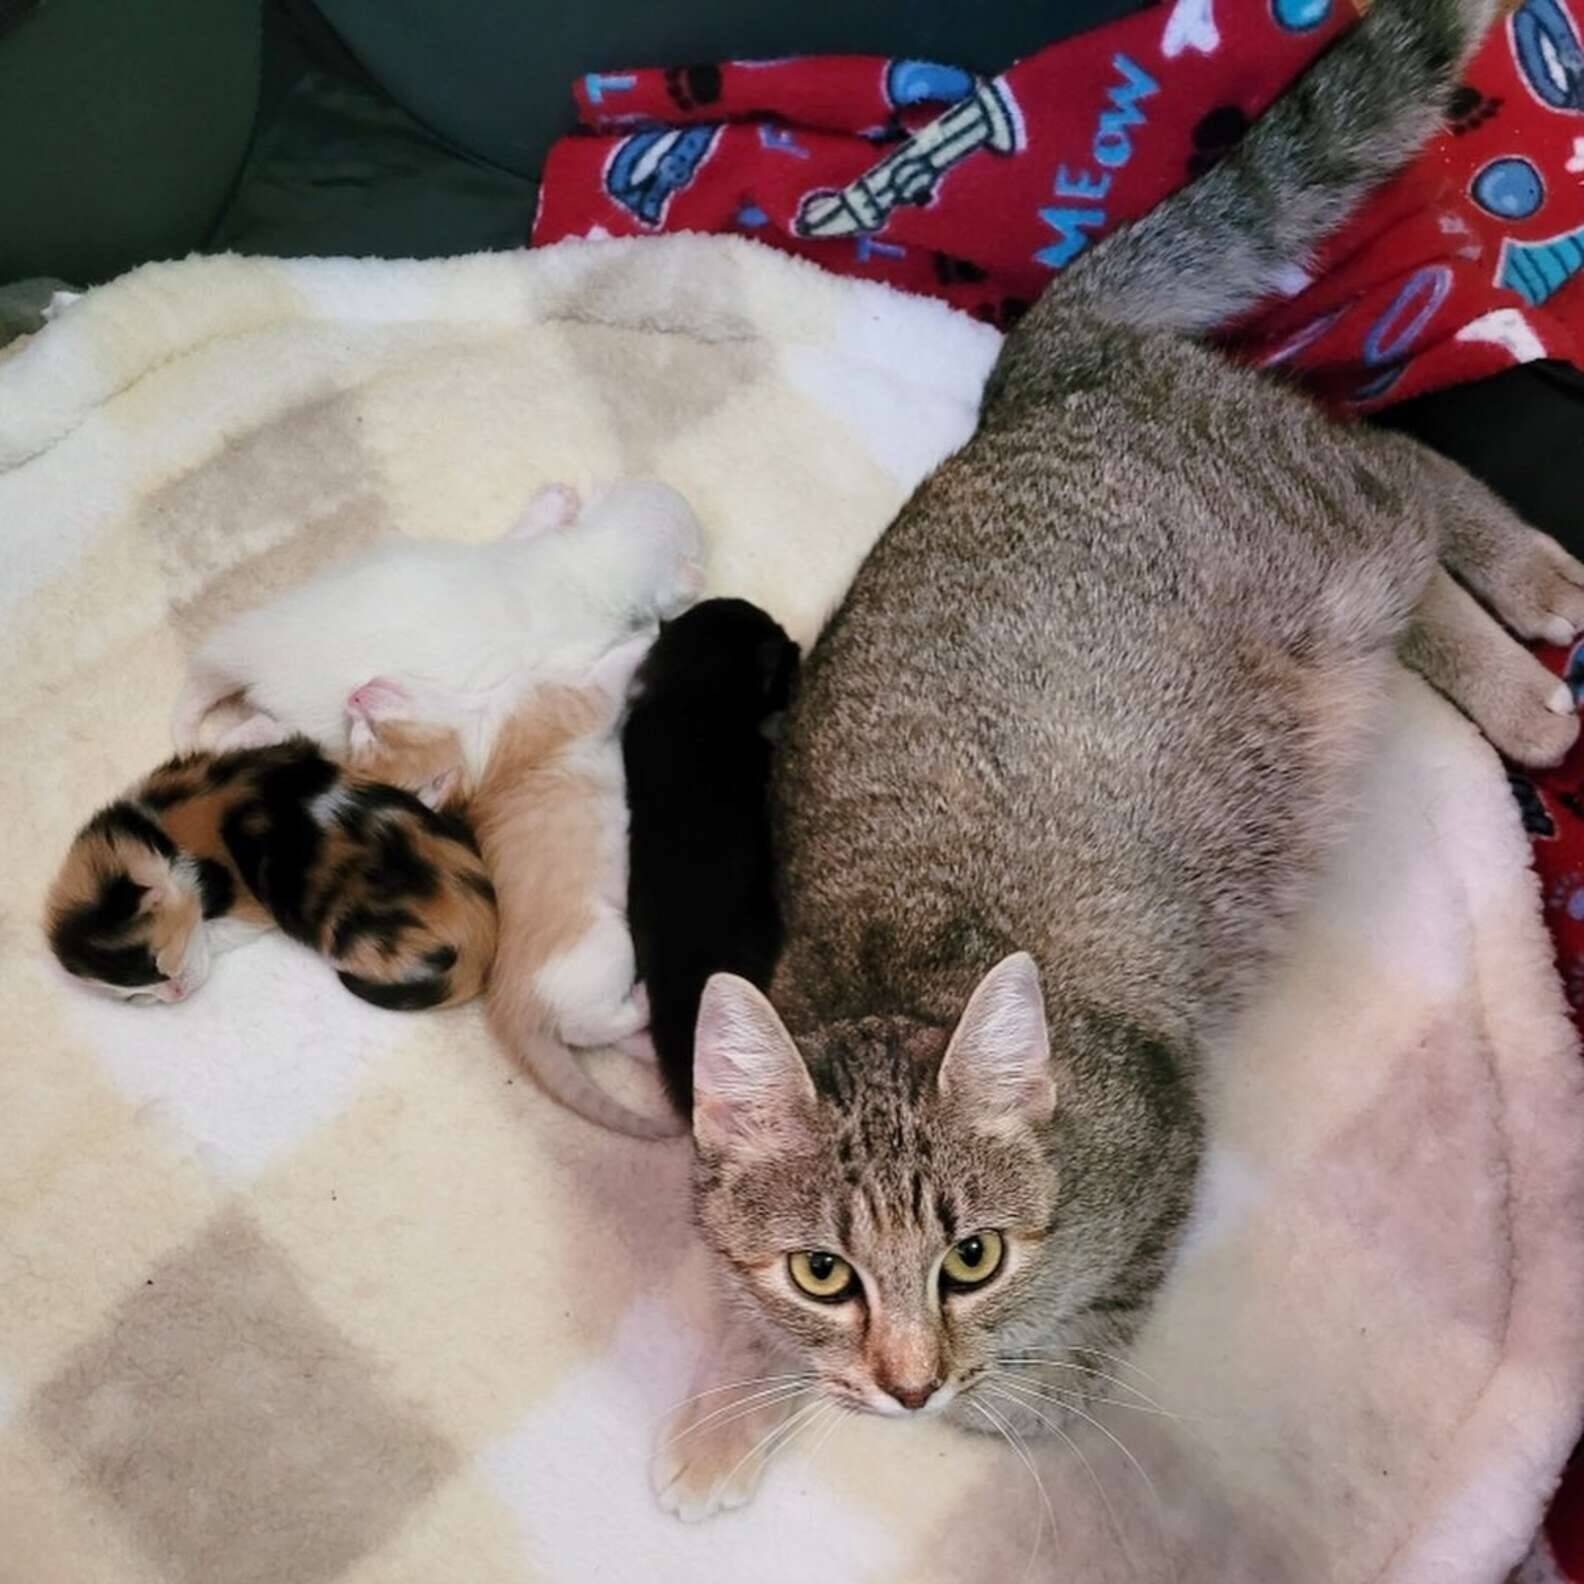 Gata encontrada em trabalho de parto é resgatada com 4 filhotinhos. Foto: Coastal Bend Cat Rescue